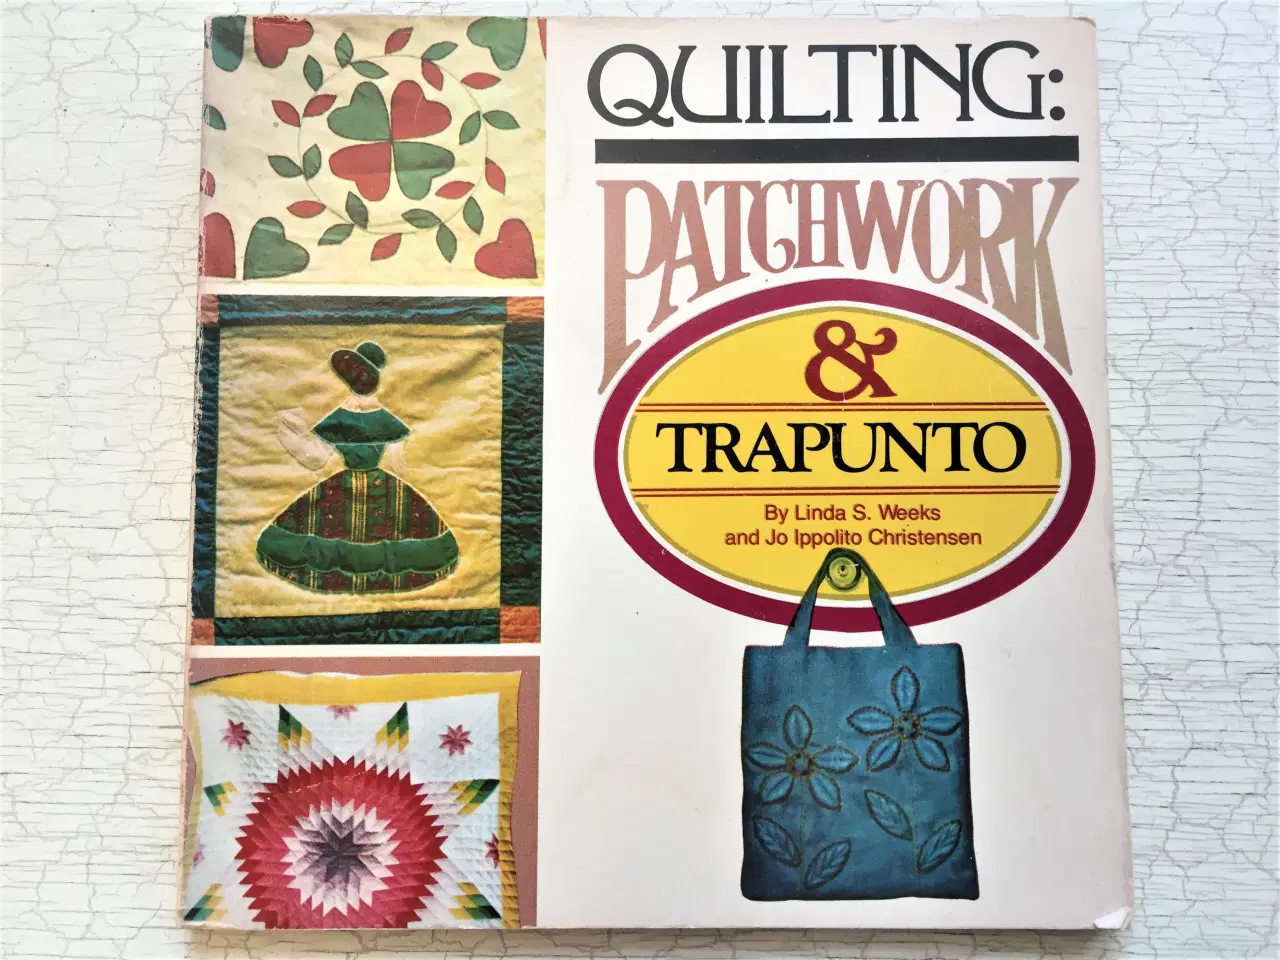 Billede 1 - Quilting: Patchwork & Trapunto